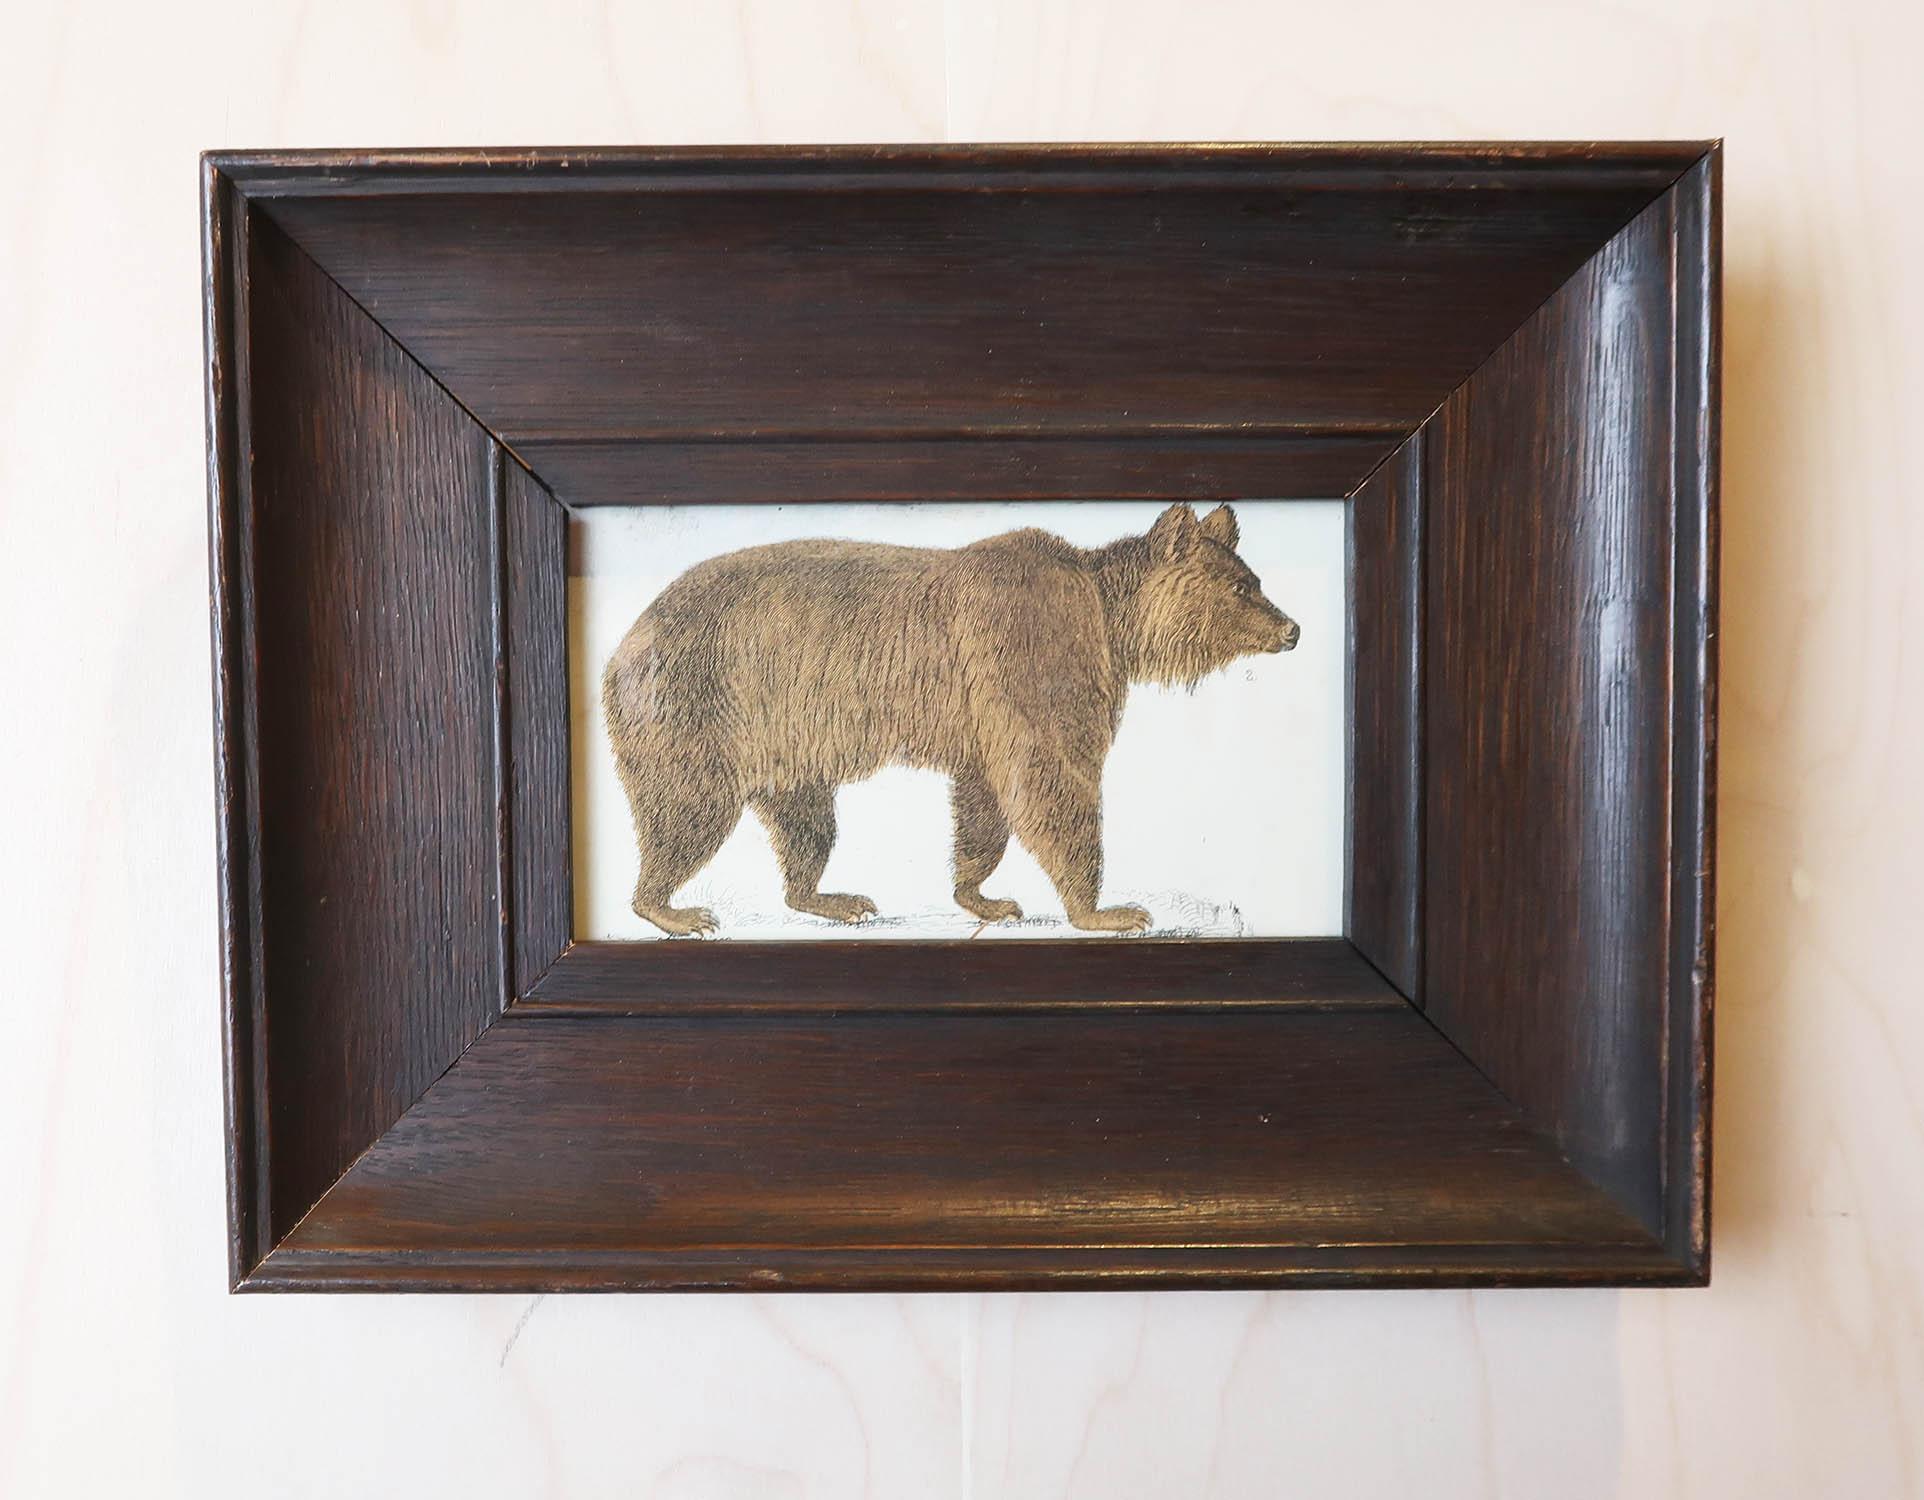 Superbe image d'un ours brun présentée dans un cadre en chêne vieilli.

Lithographie d'après le Cpt. Brown avec couleur originale à la main.

Publié en 1847.






